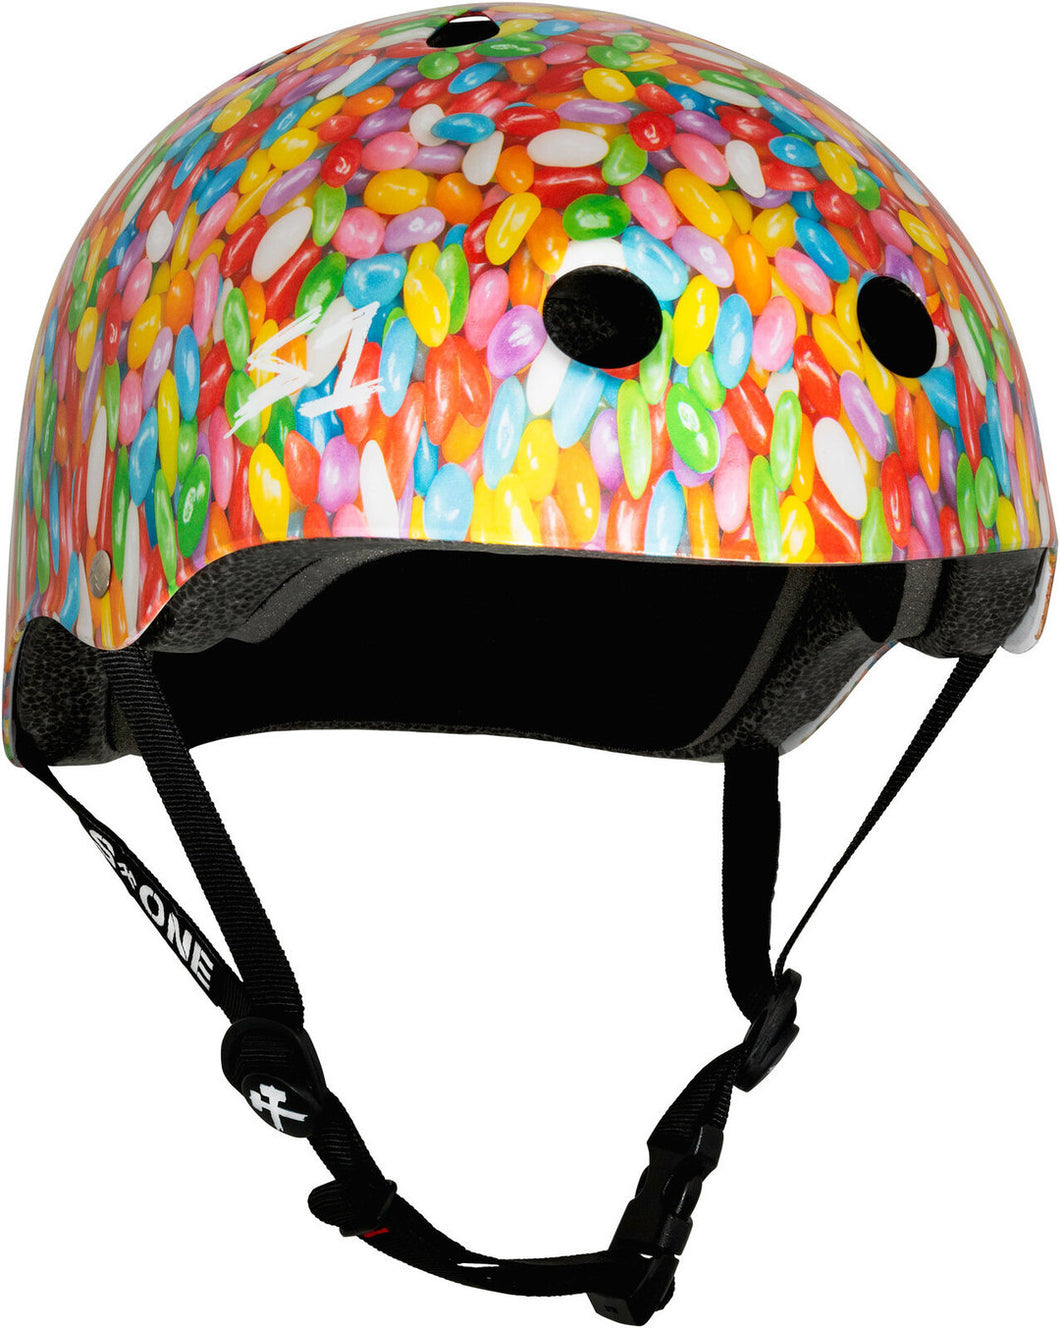 S1 Lifer Helmet - Jelly Beans (XS-XXXL)